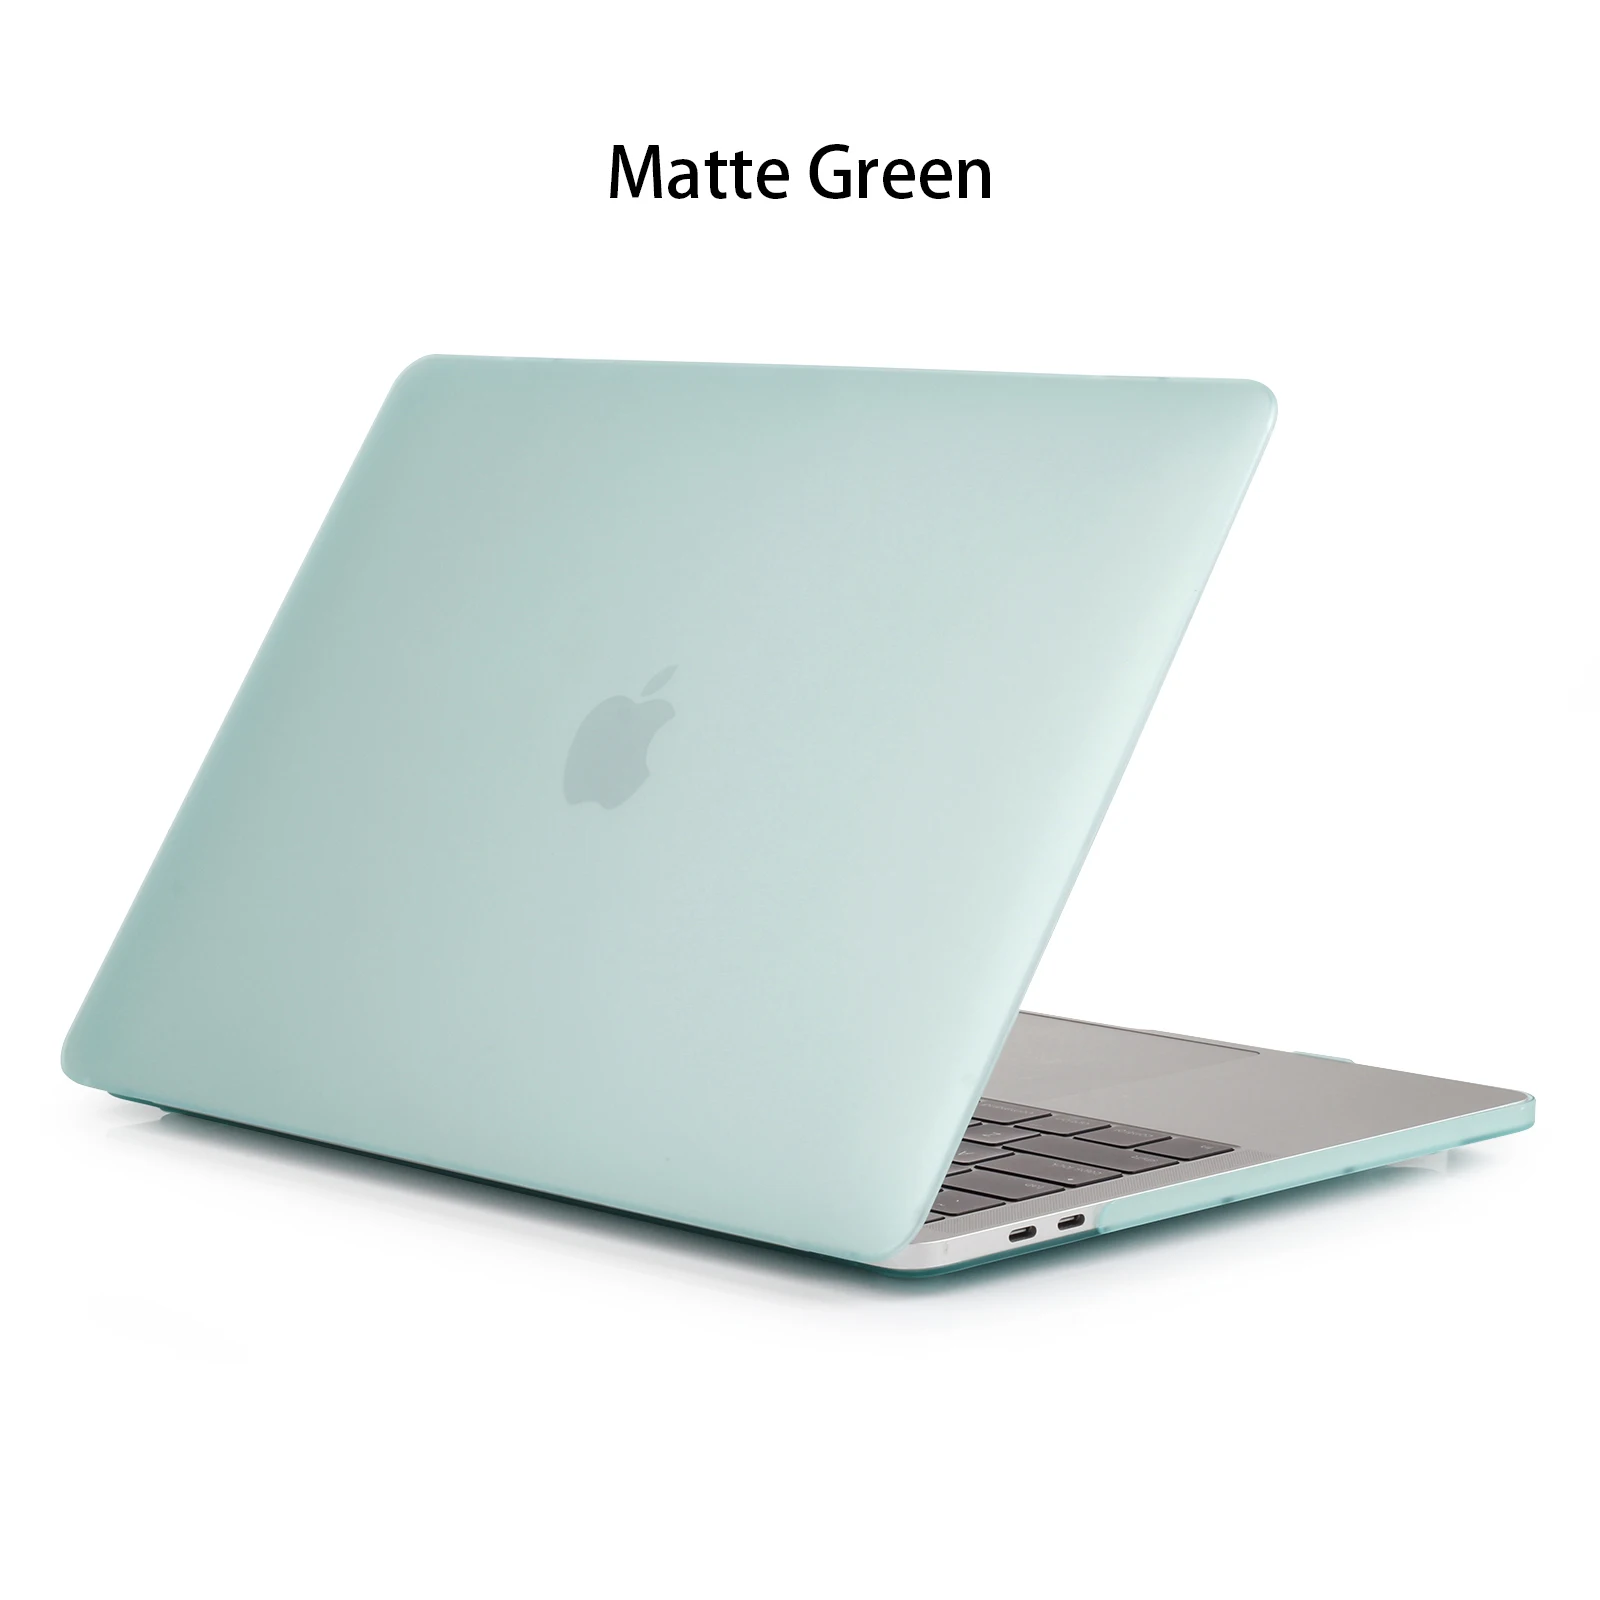 Кристально матовый чехол для ноутбука MacBook Air 13 Pro 15 retina 11 12 дюймов с сенсорной панелью матовый чехол A1706 A1707 A1990 A1932 A2159 - Цвет: Matte Green